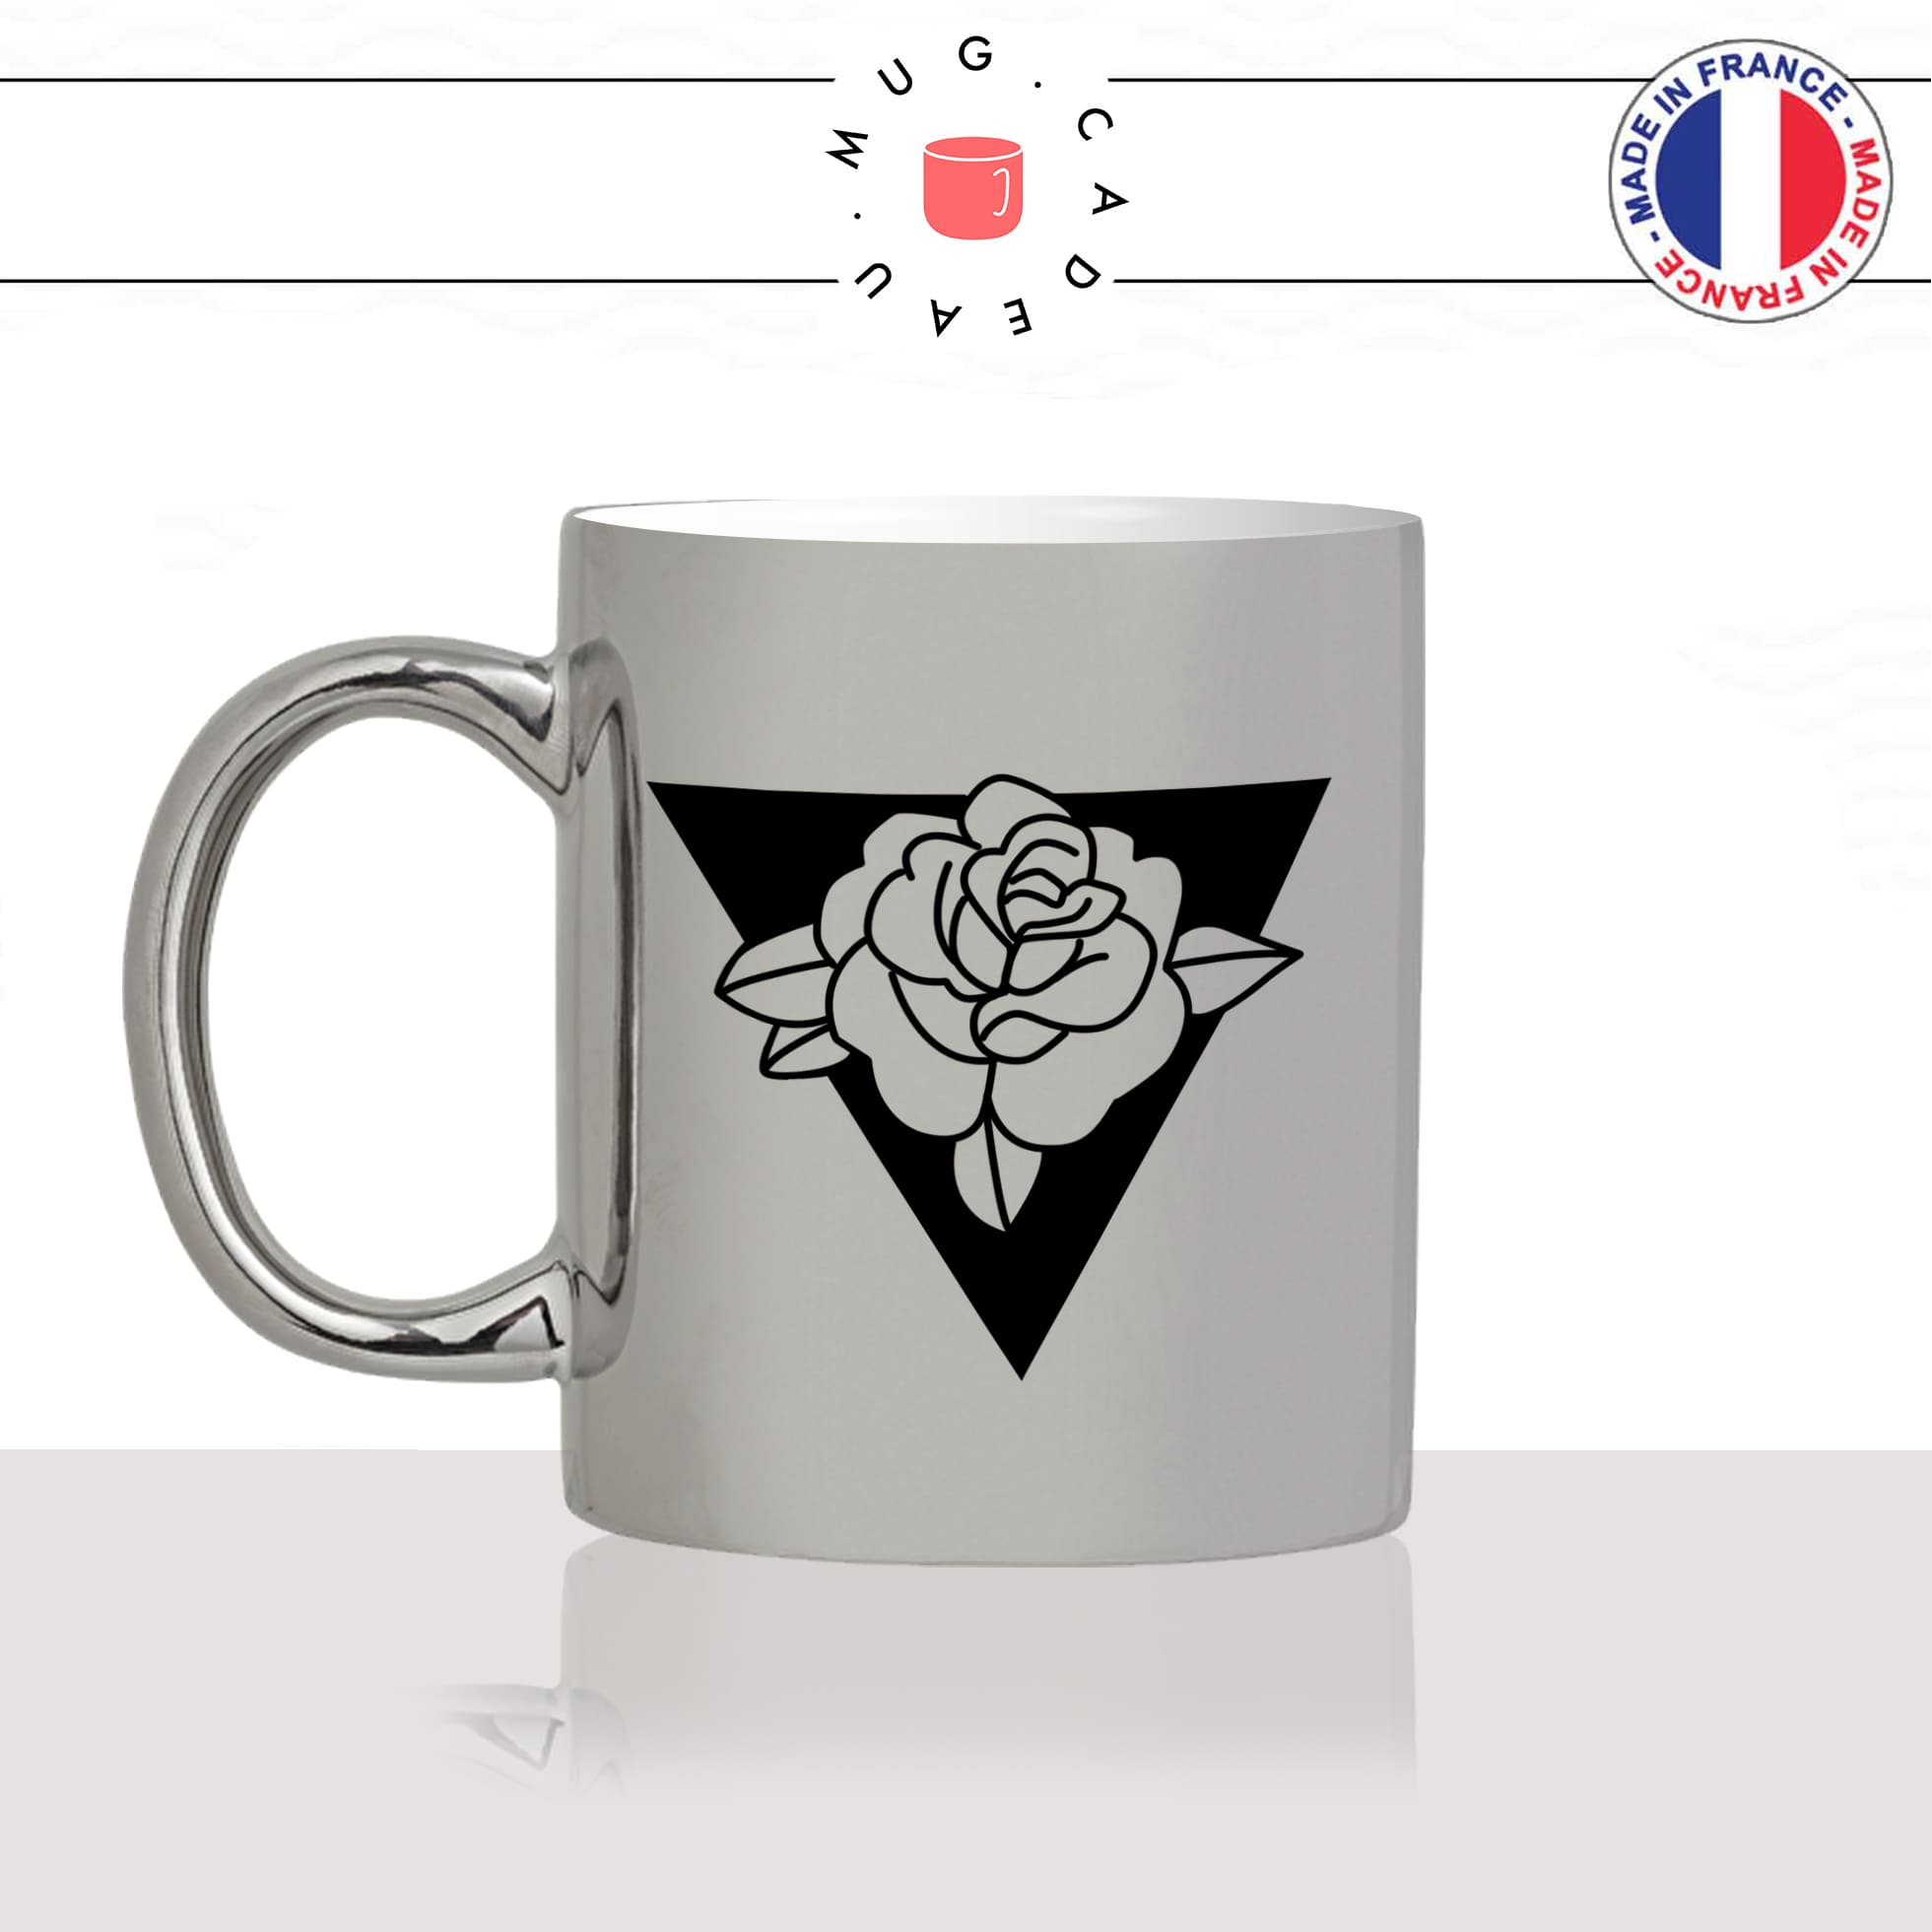 mug-tasse-argent-argenté-silver-fleur-fleurs-flower-bouton-de-rose-triangle-noir-dessin-decoration-mignon-joli-idée-cadeau-fun-cool-café-thé